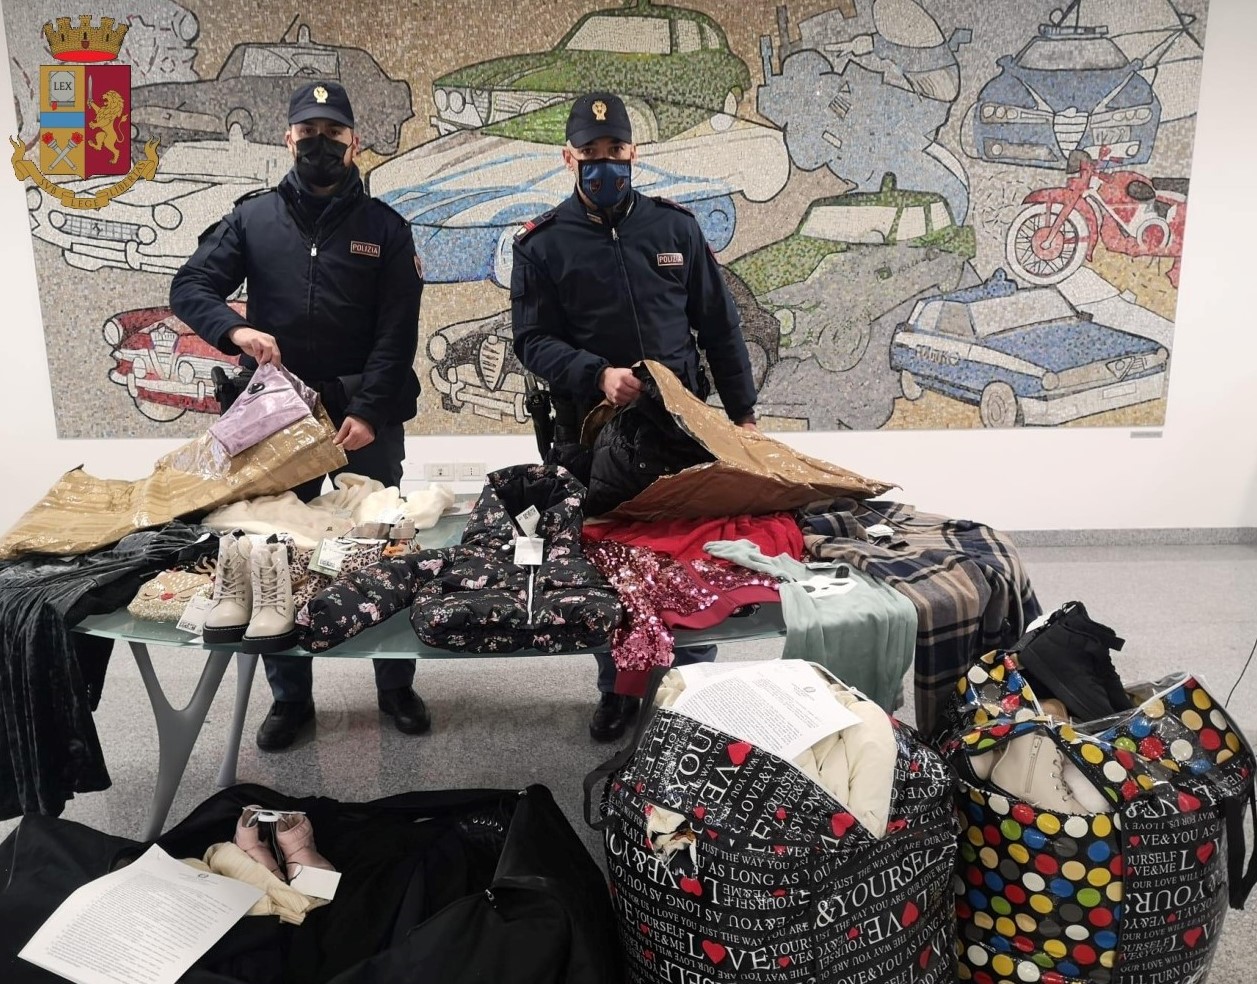 Shkatërrohet banda e shqiptarëve: Vidhnin rroba H&M në qendrat tregtare në Itali dhe i shisnin Tiranë, Durrës dhe Vlorë